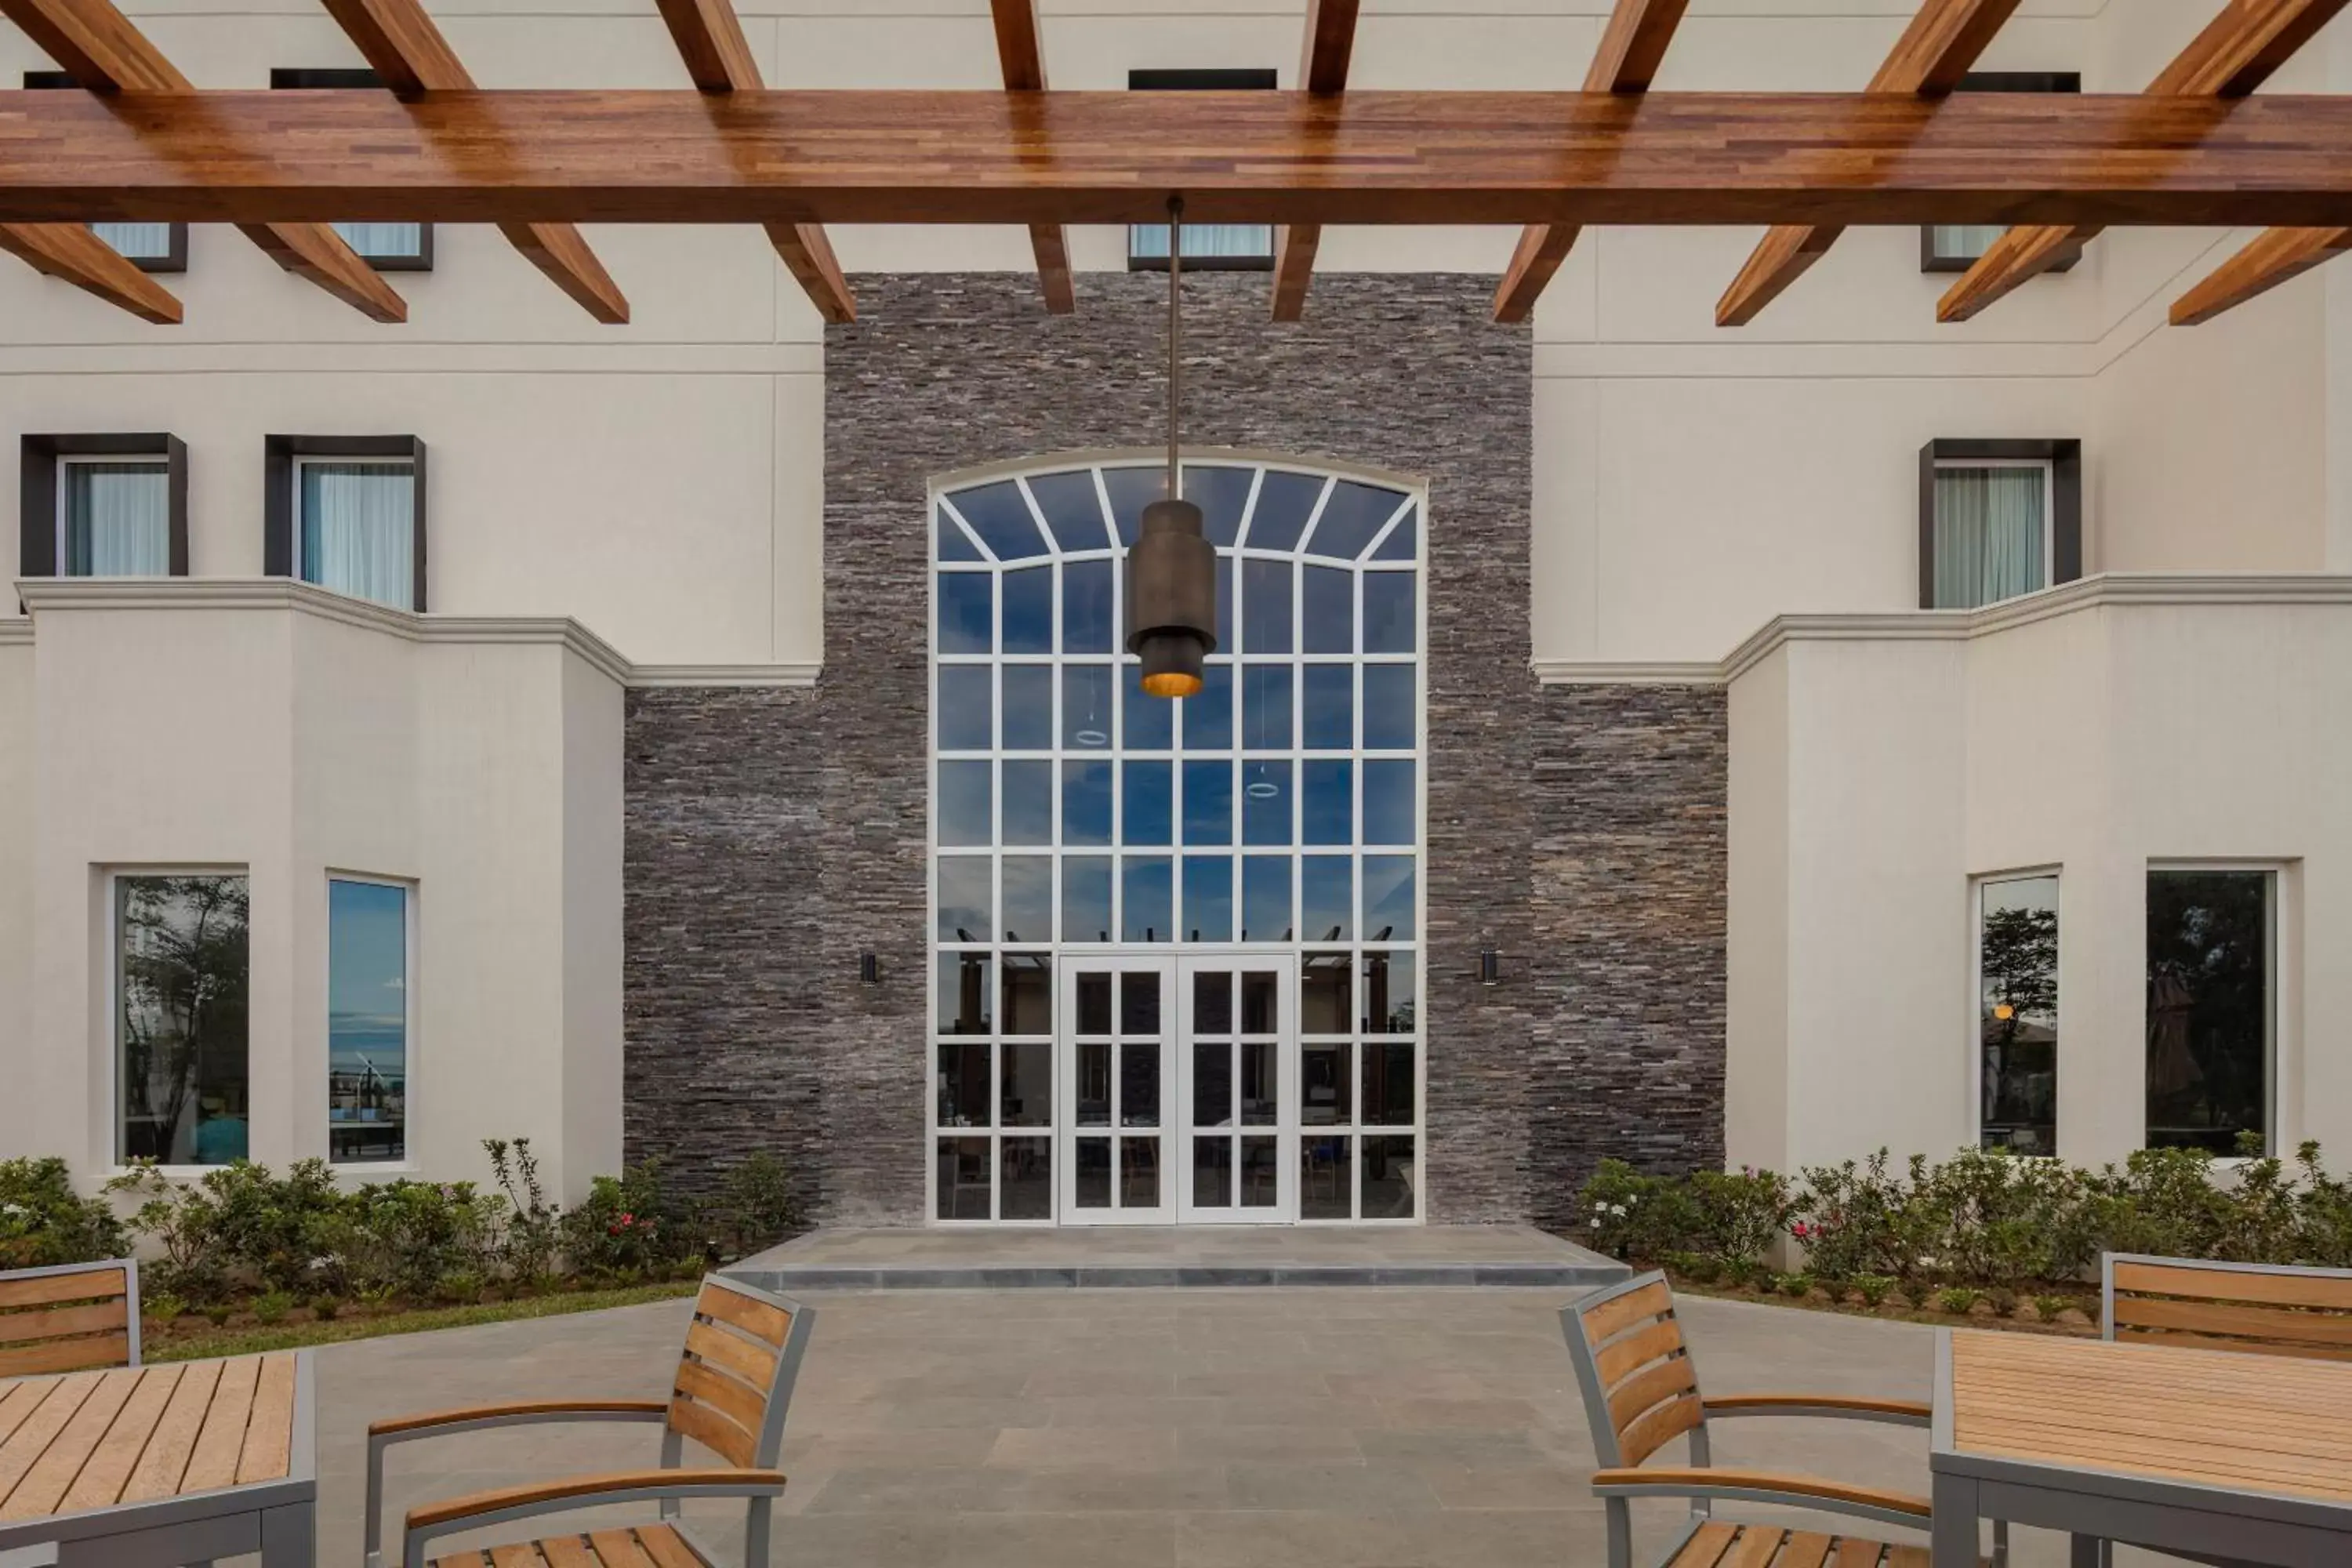 Property building, Facade/Entrance in Staybridge Suites - Saltillo, an IHG Hotel